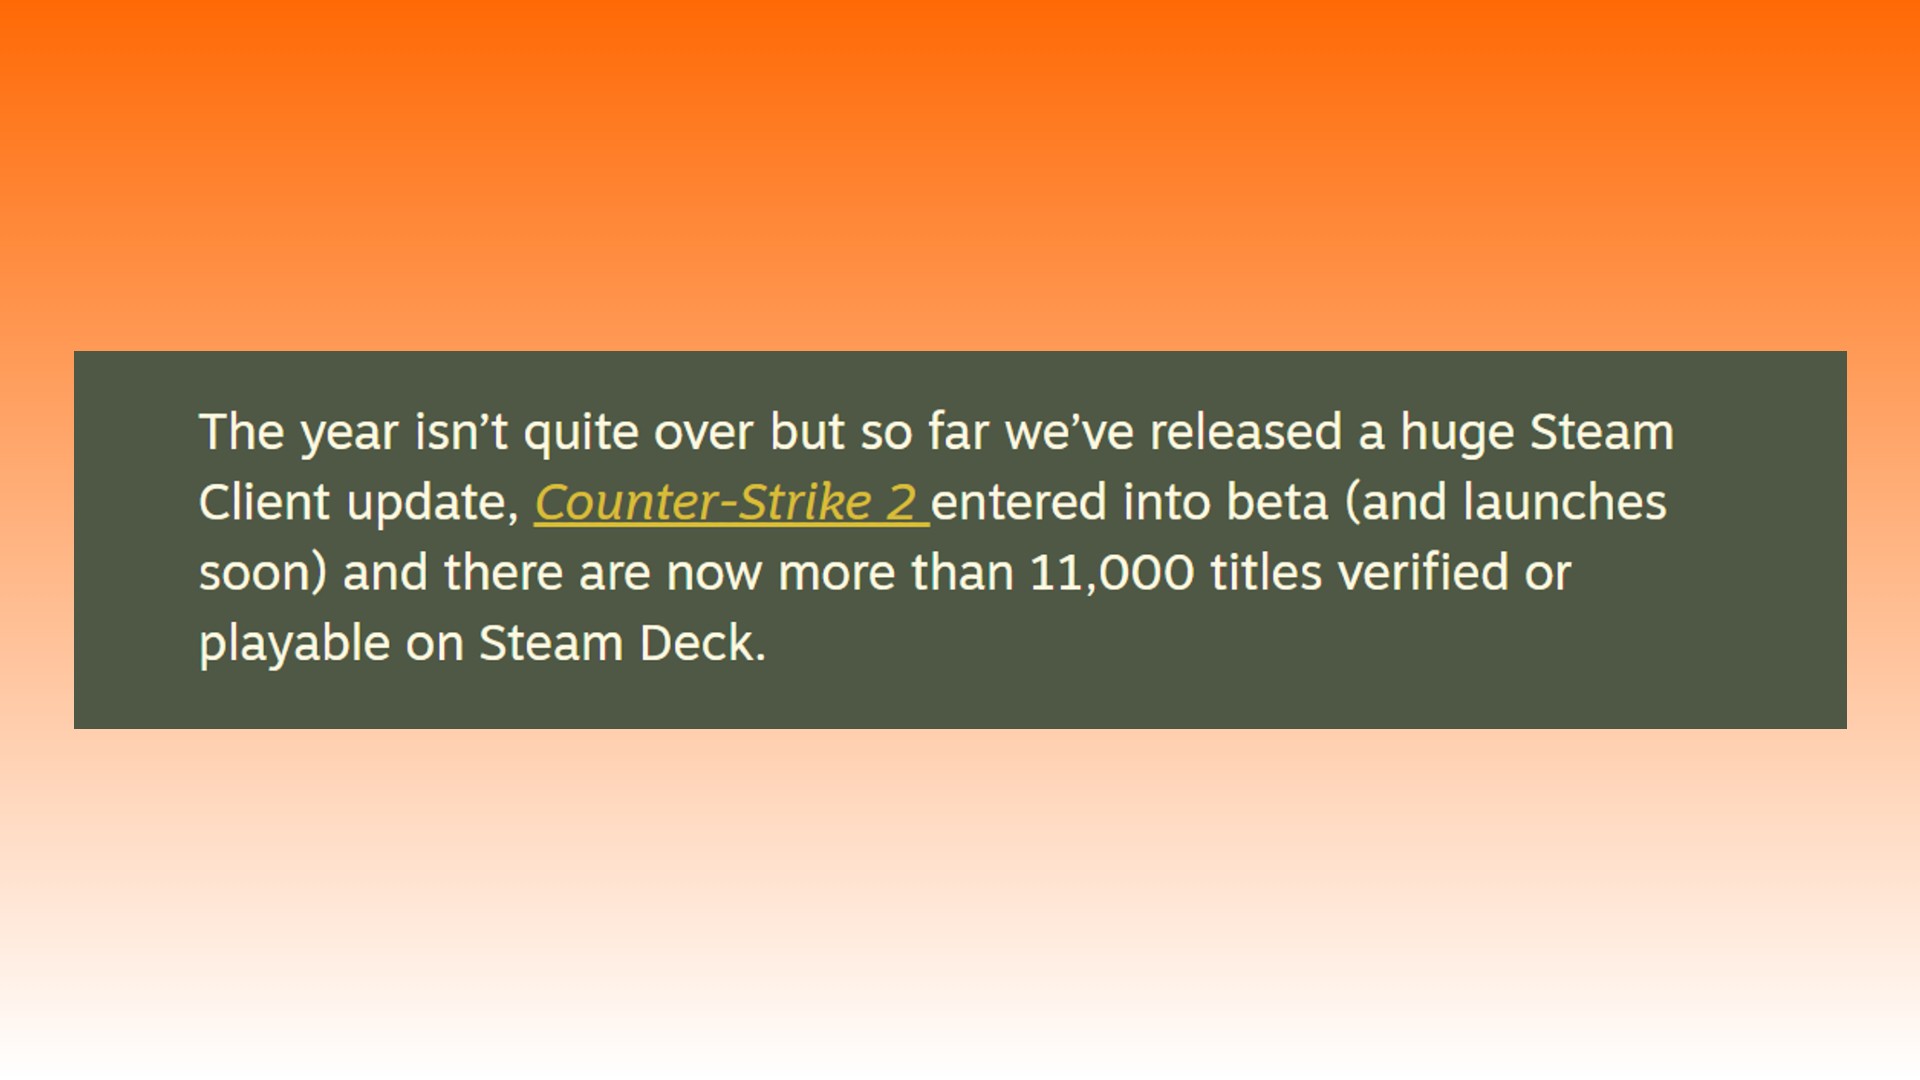 Counter-Strike 2 lanceringsdatum: Verklaring van Valve over de lancering van het tweede deel van CSGO Counter-Strike 2